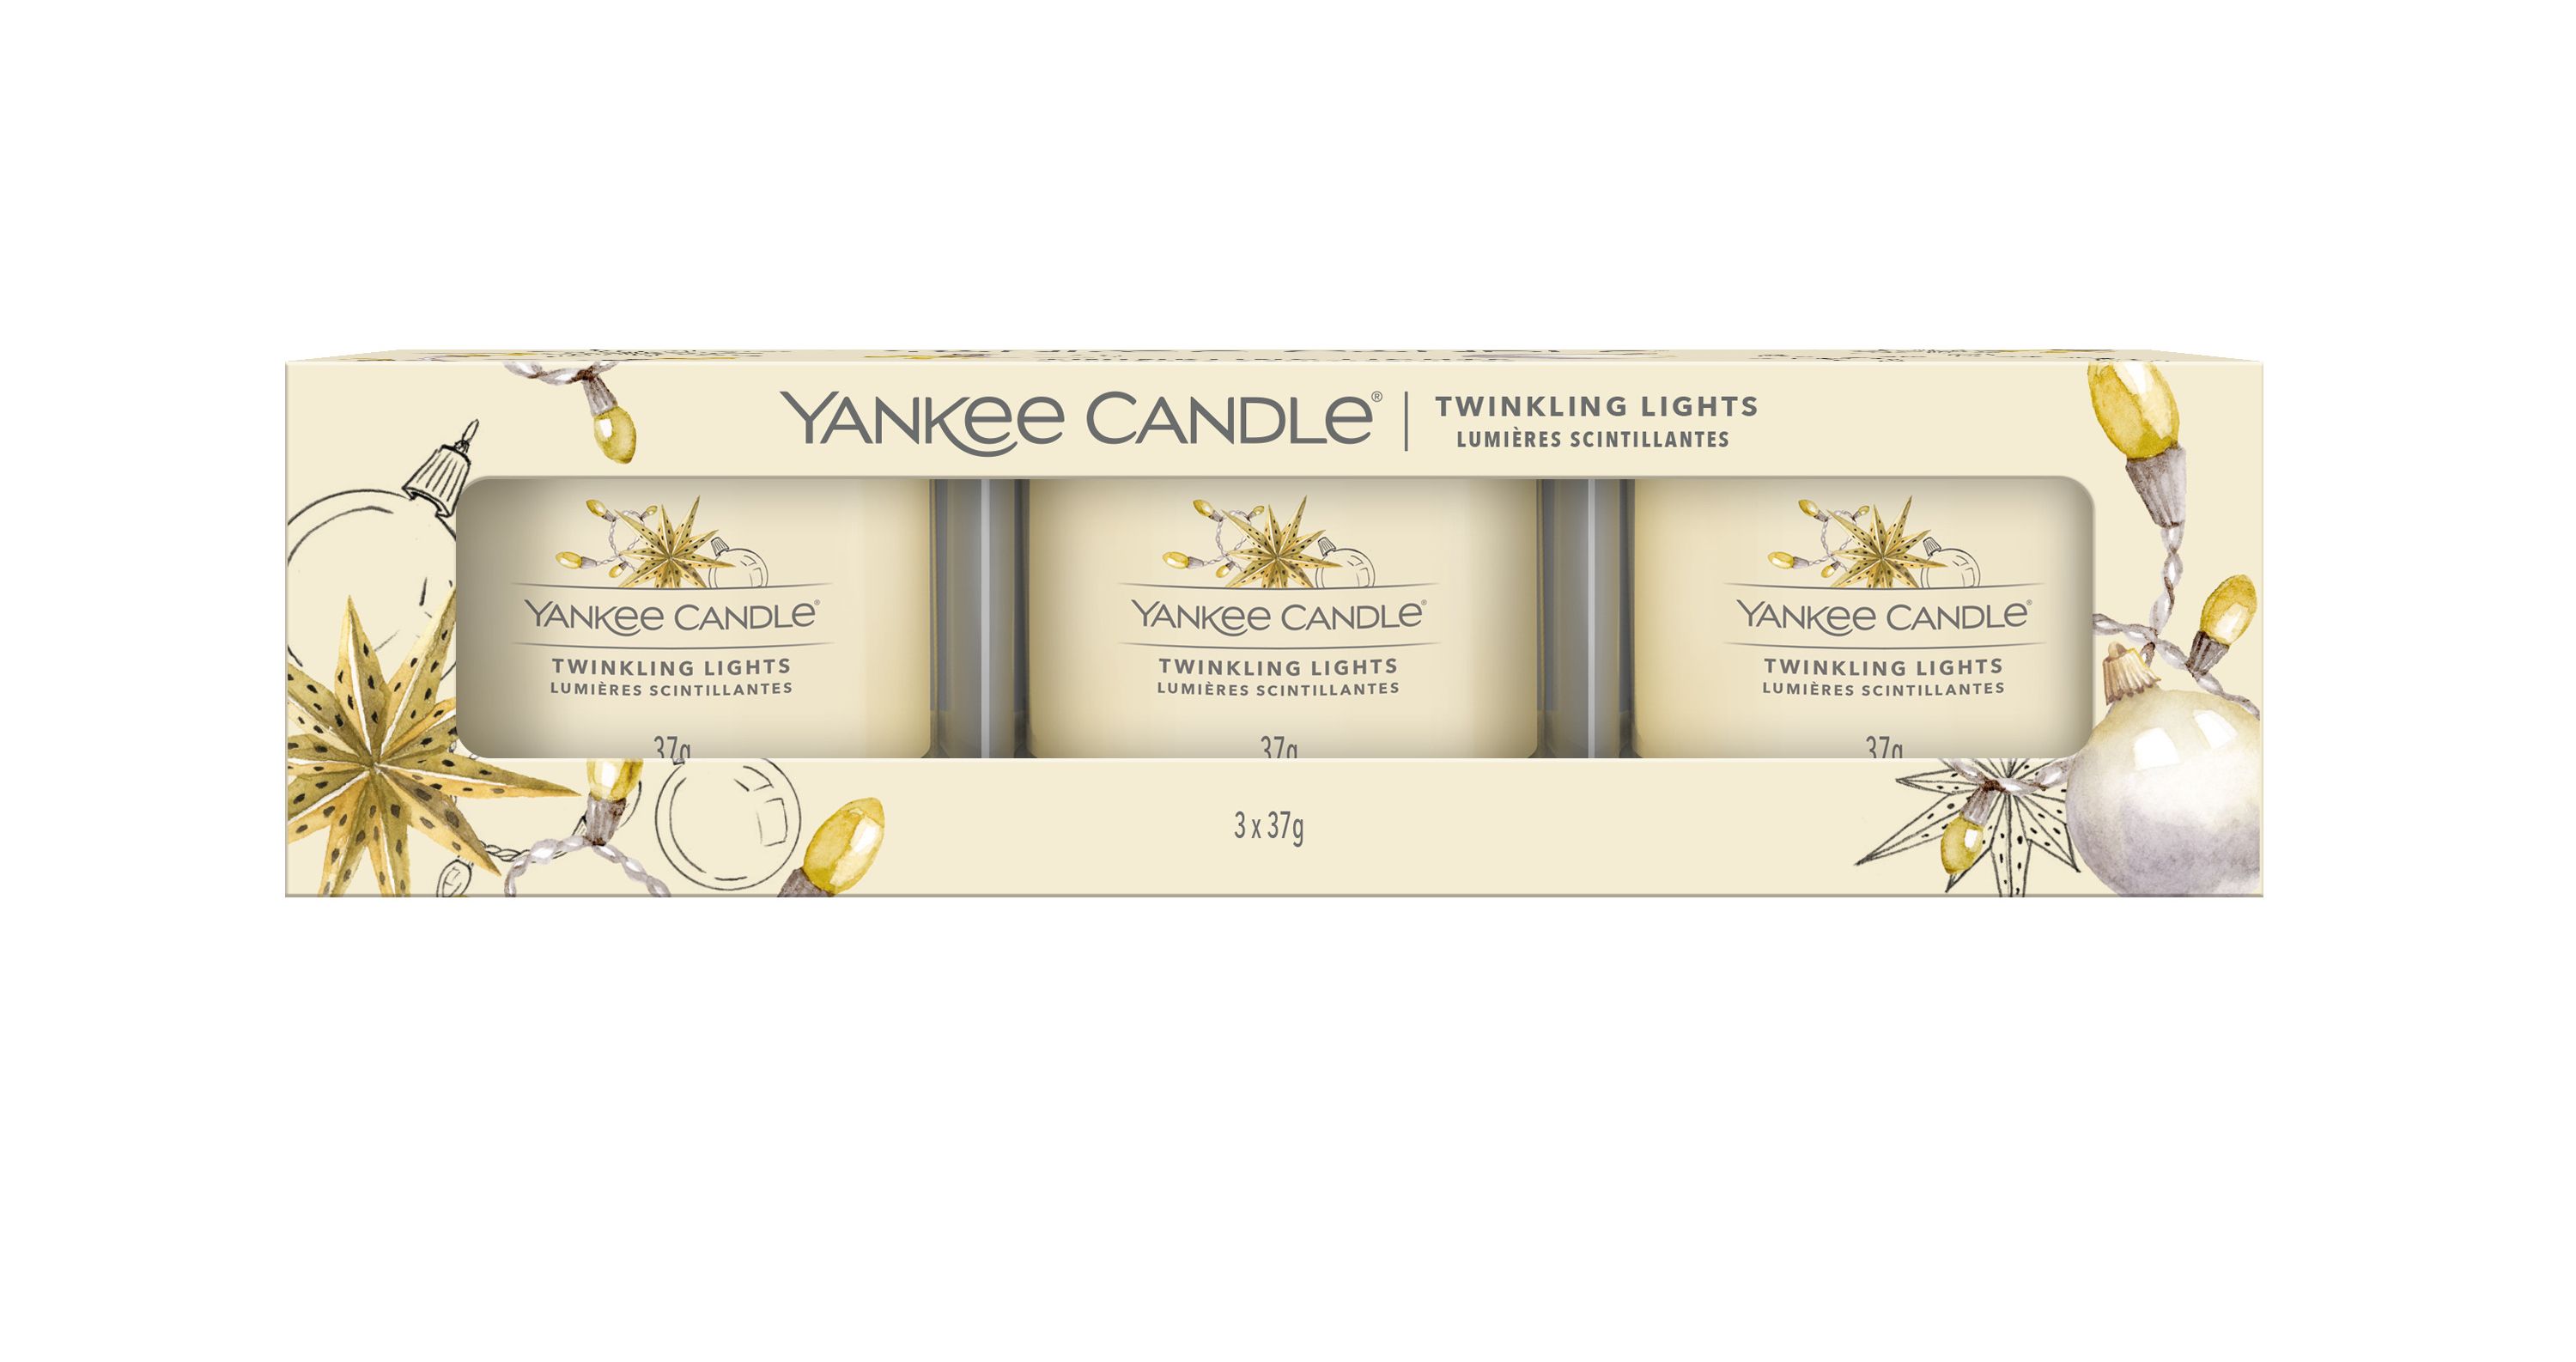 Zuhause mit Yankee Candle verschönern - Yankee Candle Duftkerzen